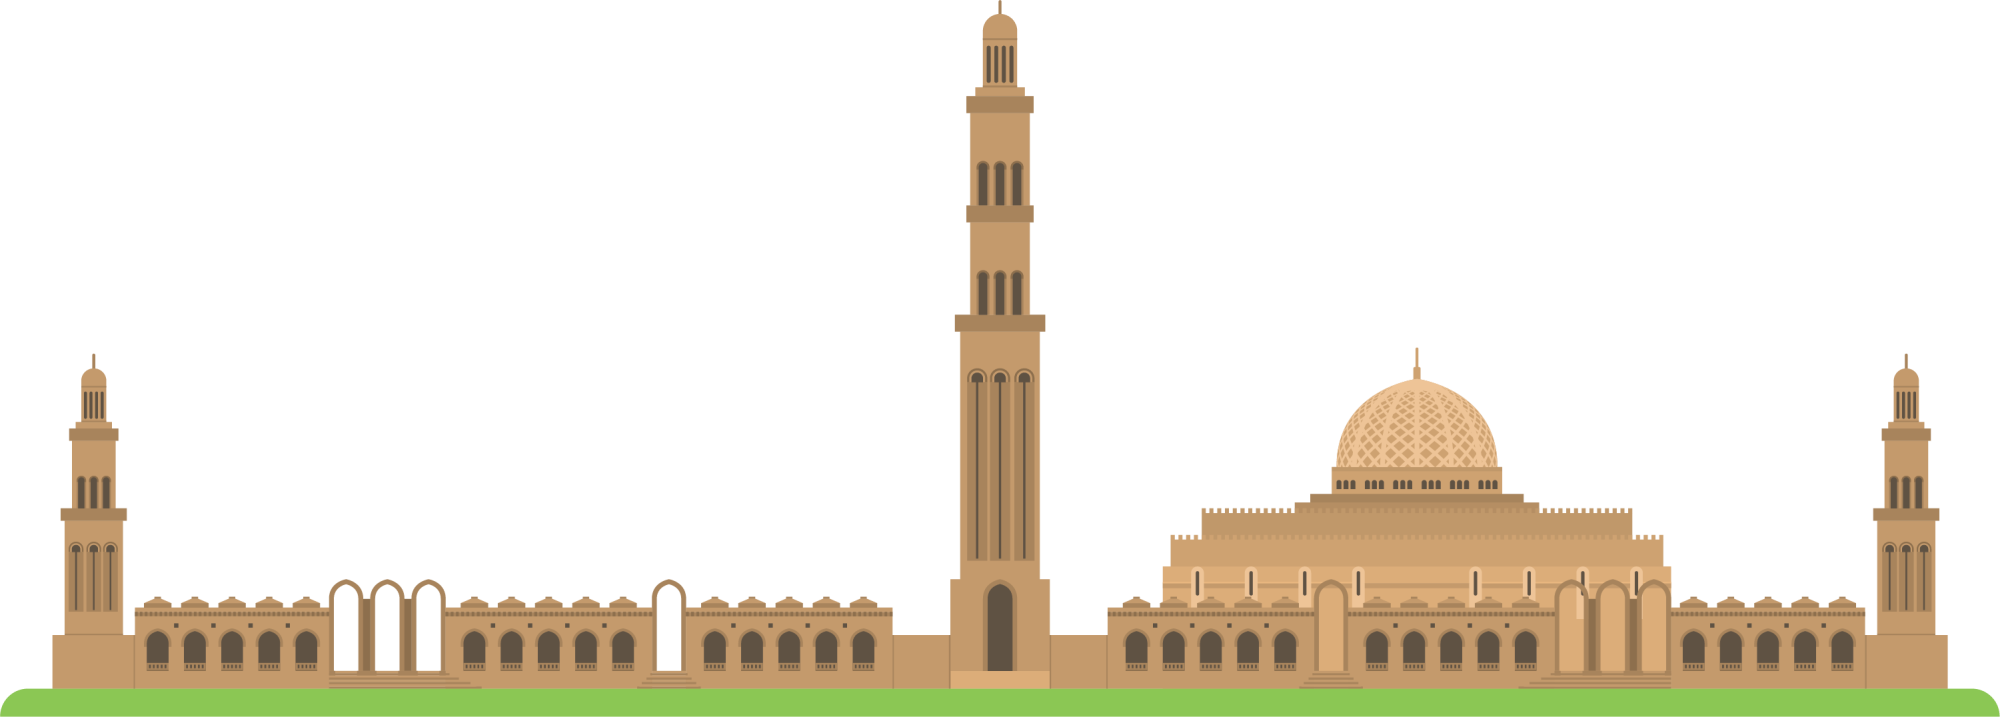 Oman Building Architecture Icon - Church (2000x717)